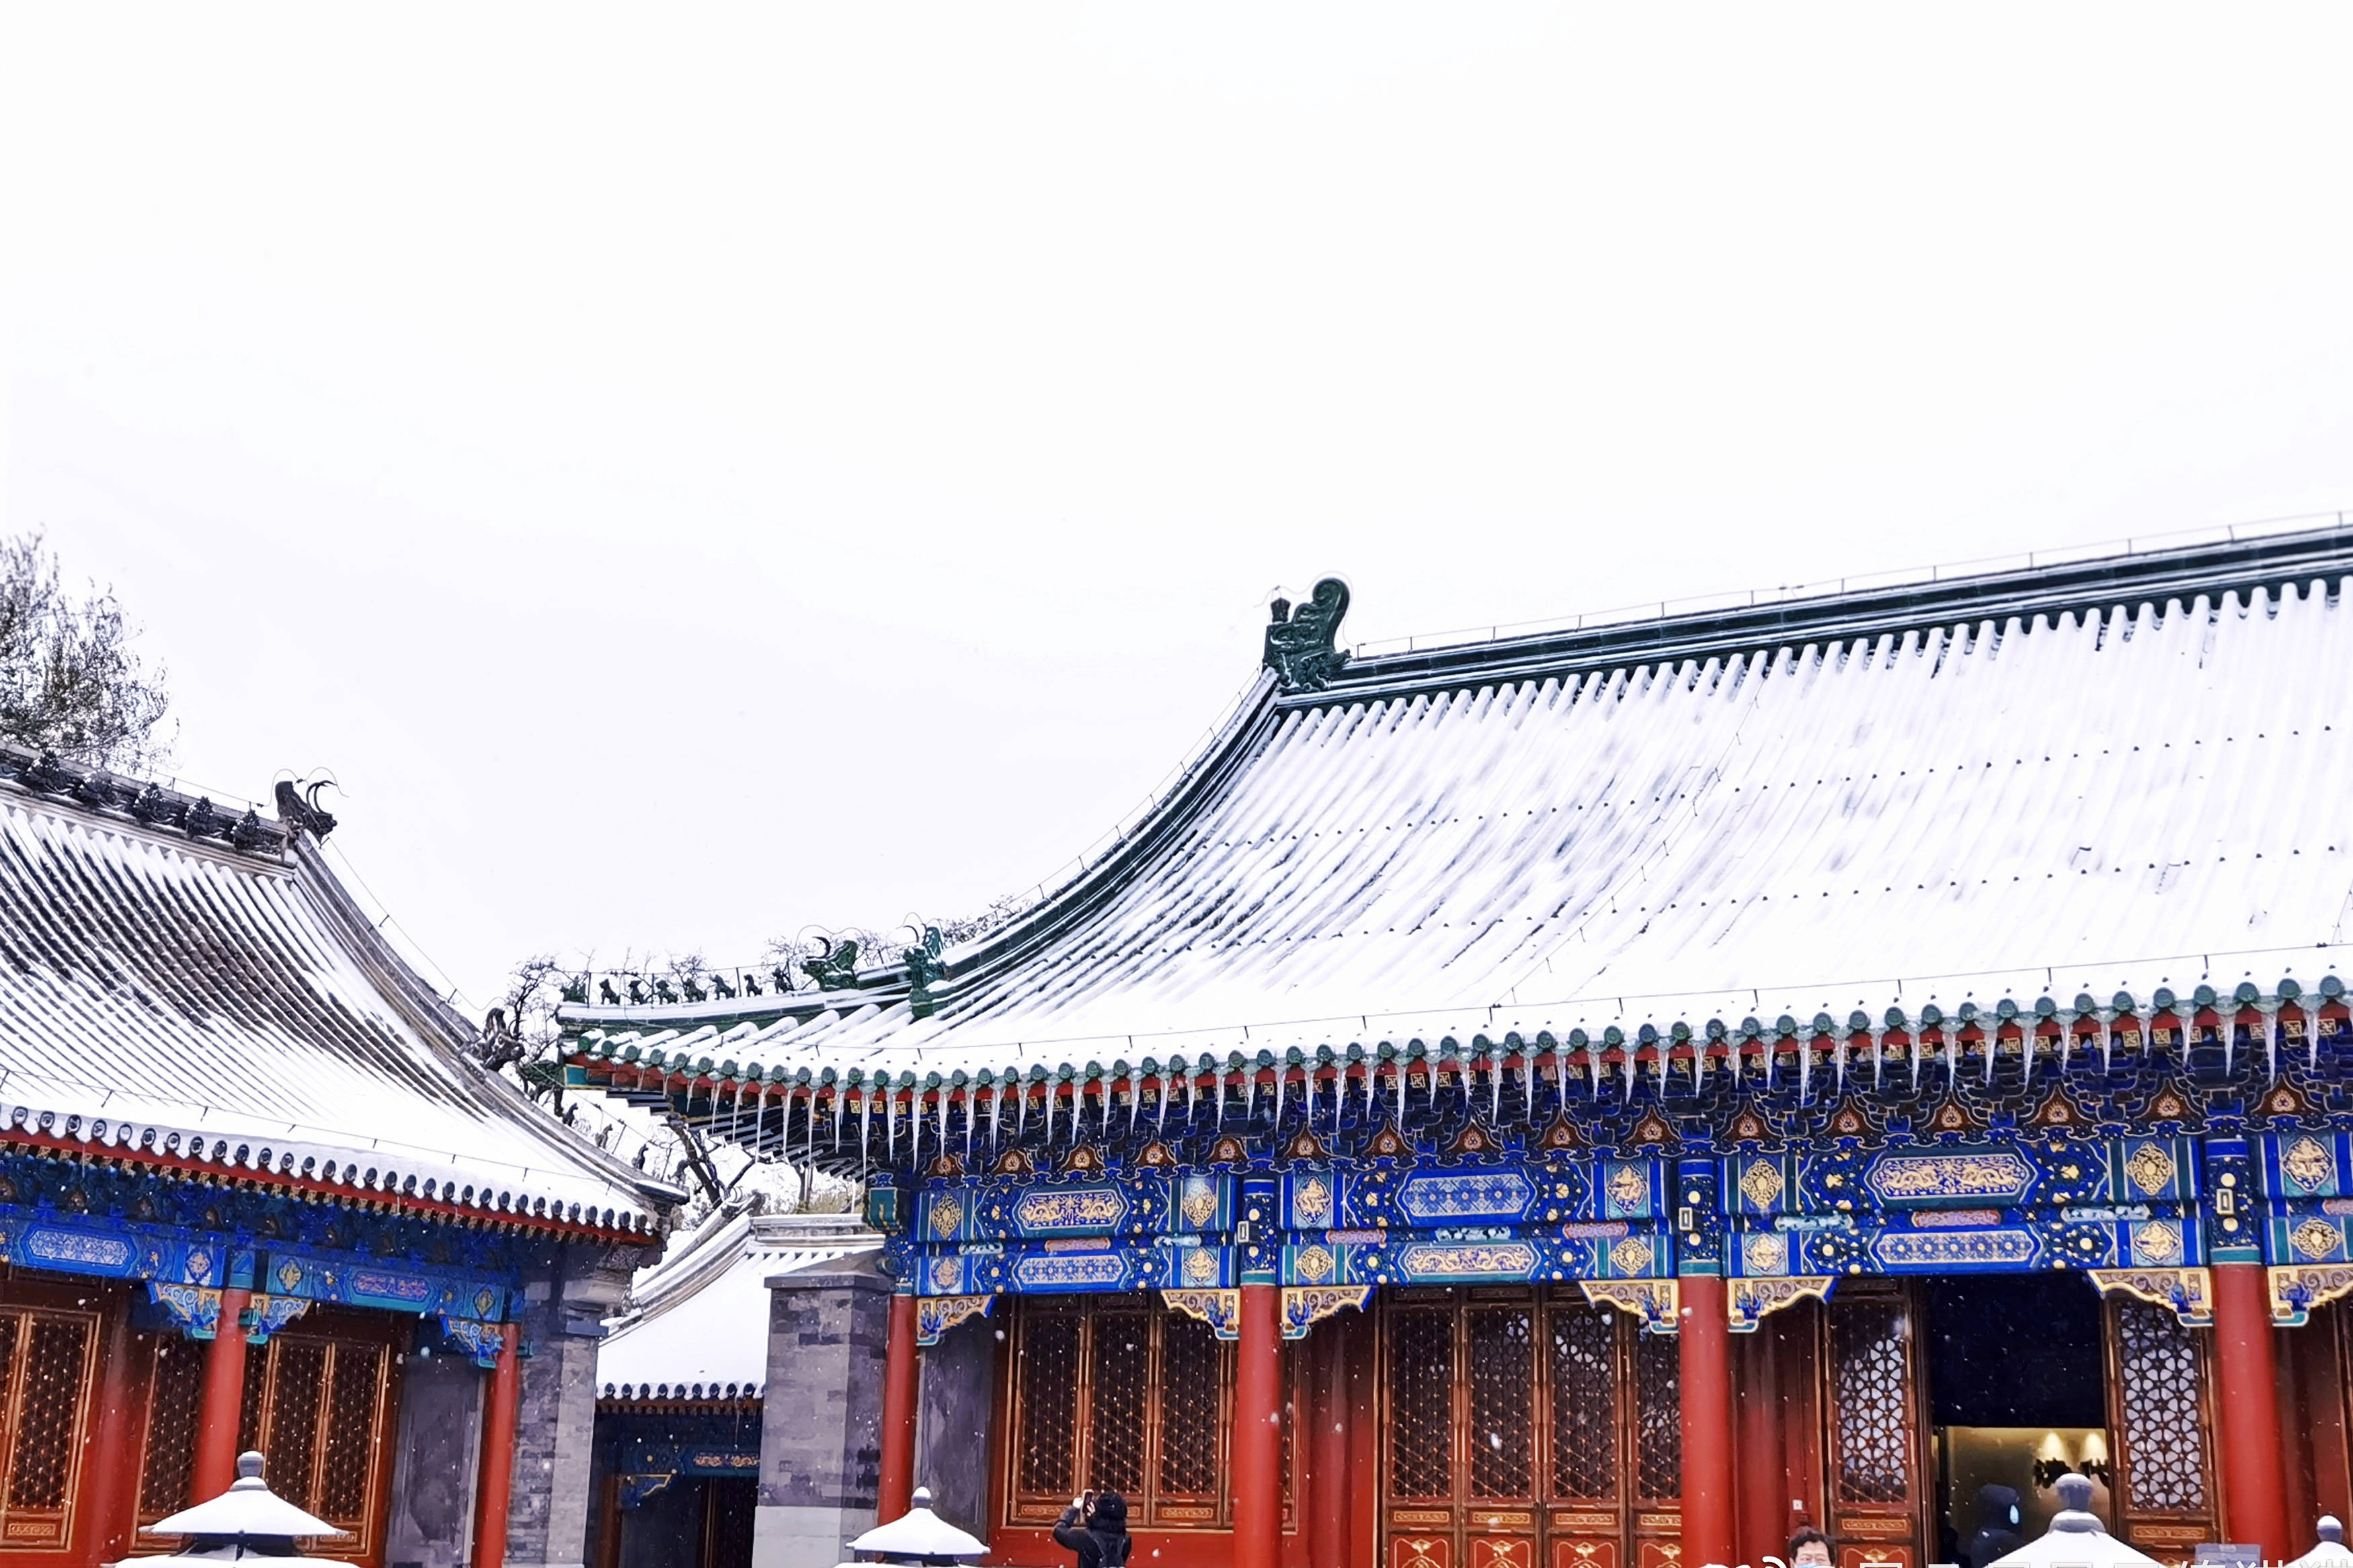 北京雪景图片2022图片